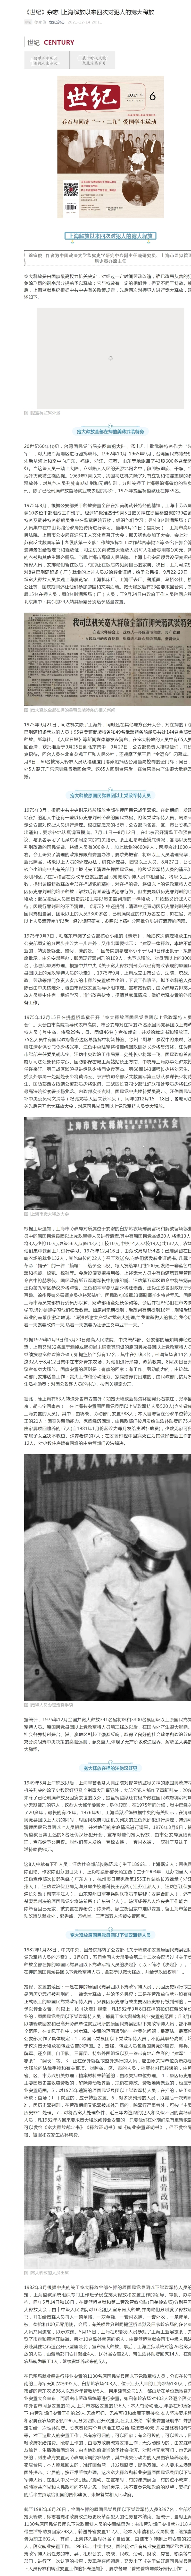 《世纪》杂志 _上海解放以来四次对犯人的宽大释放.jpg